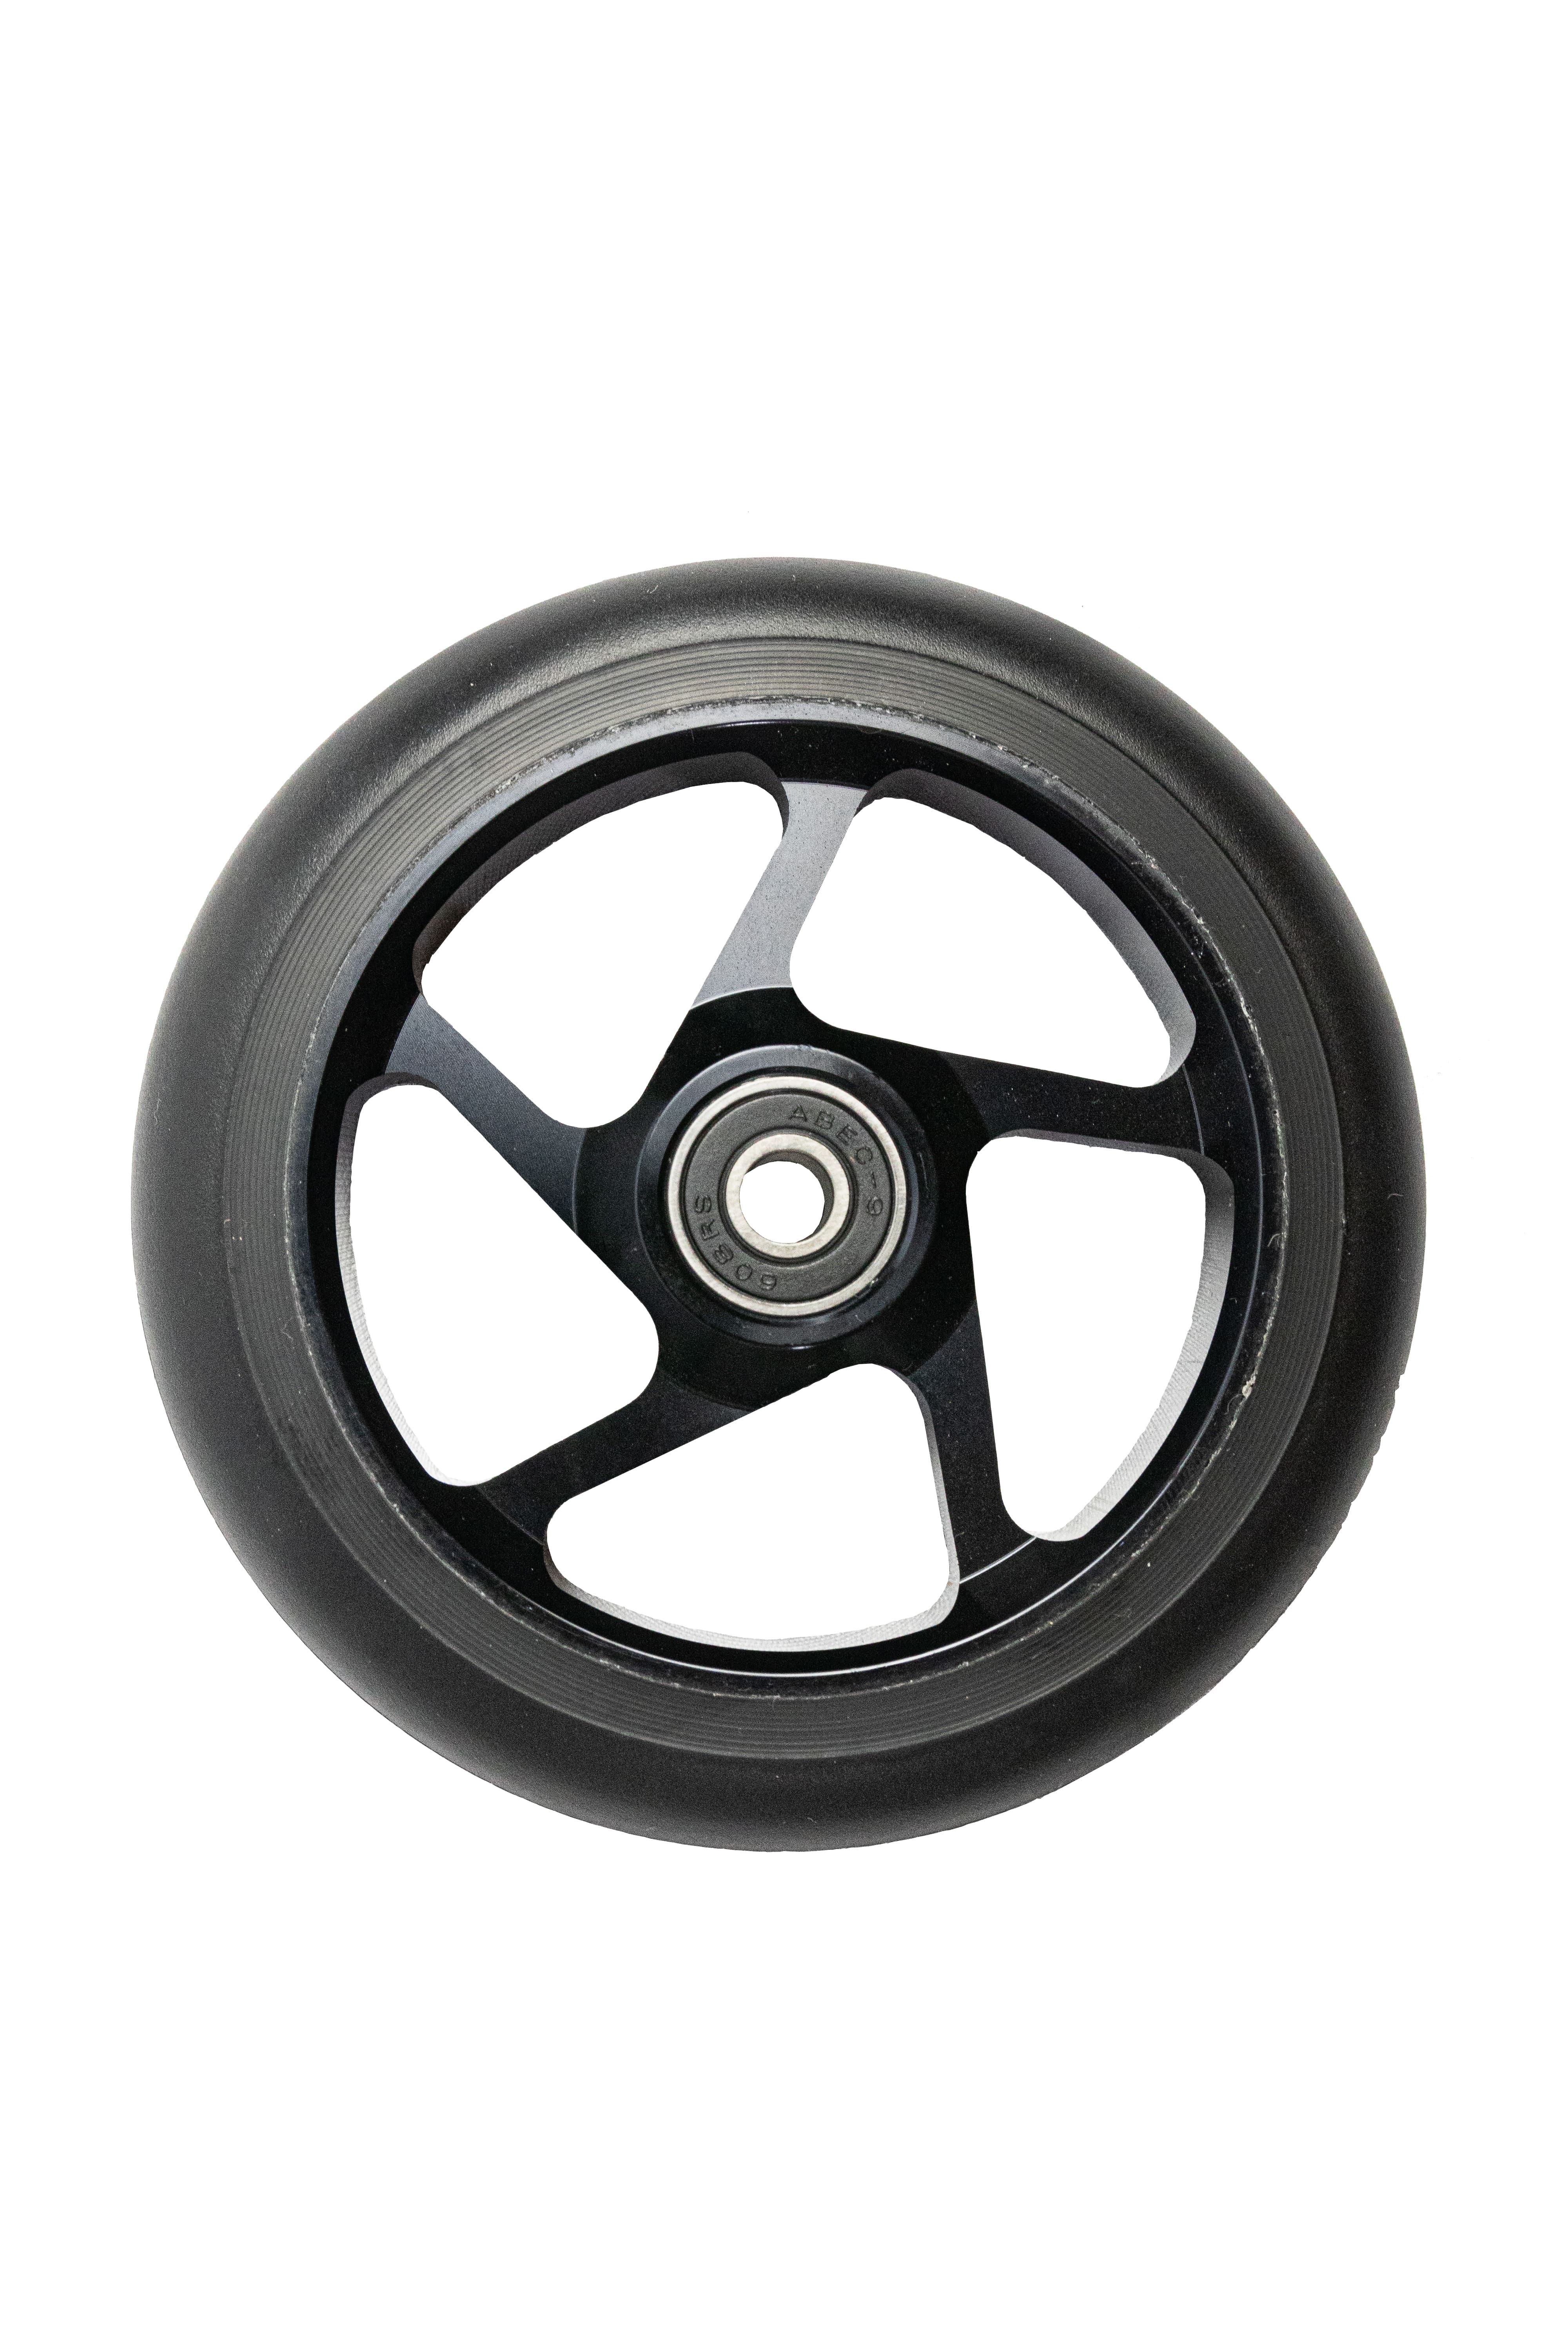 DOM Wheels 110x24 ( 01 unid.)